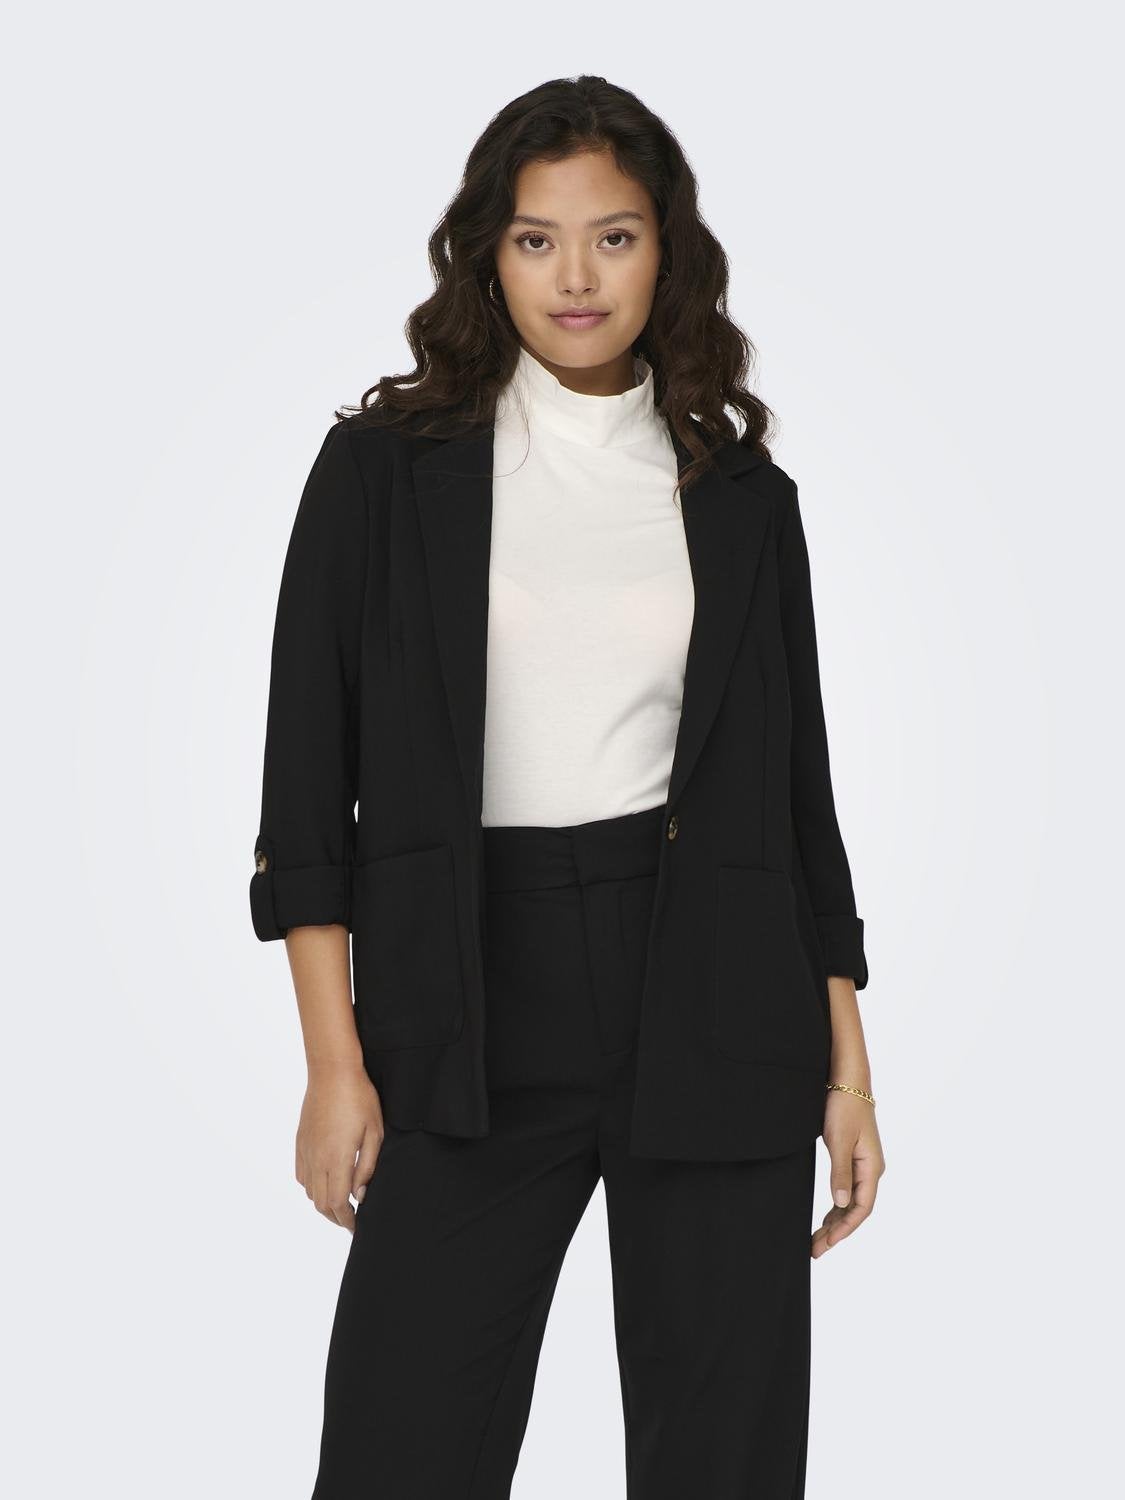 Women double-face fabric blazer and pants suit wholesale Black color -  wholesale clothing